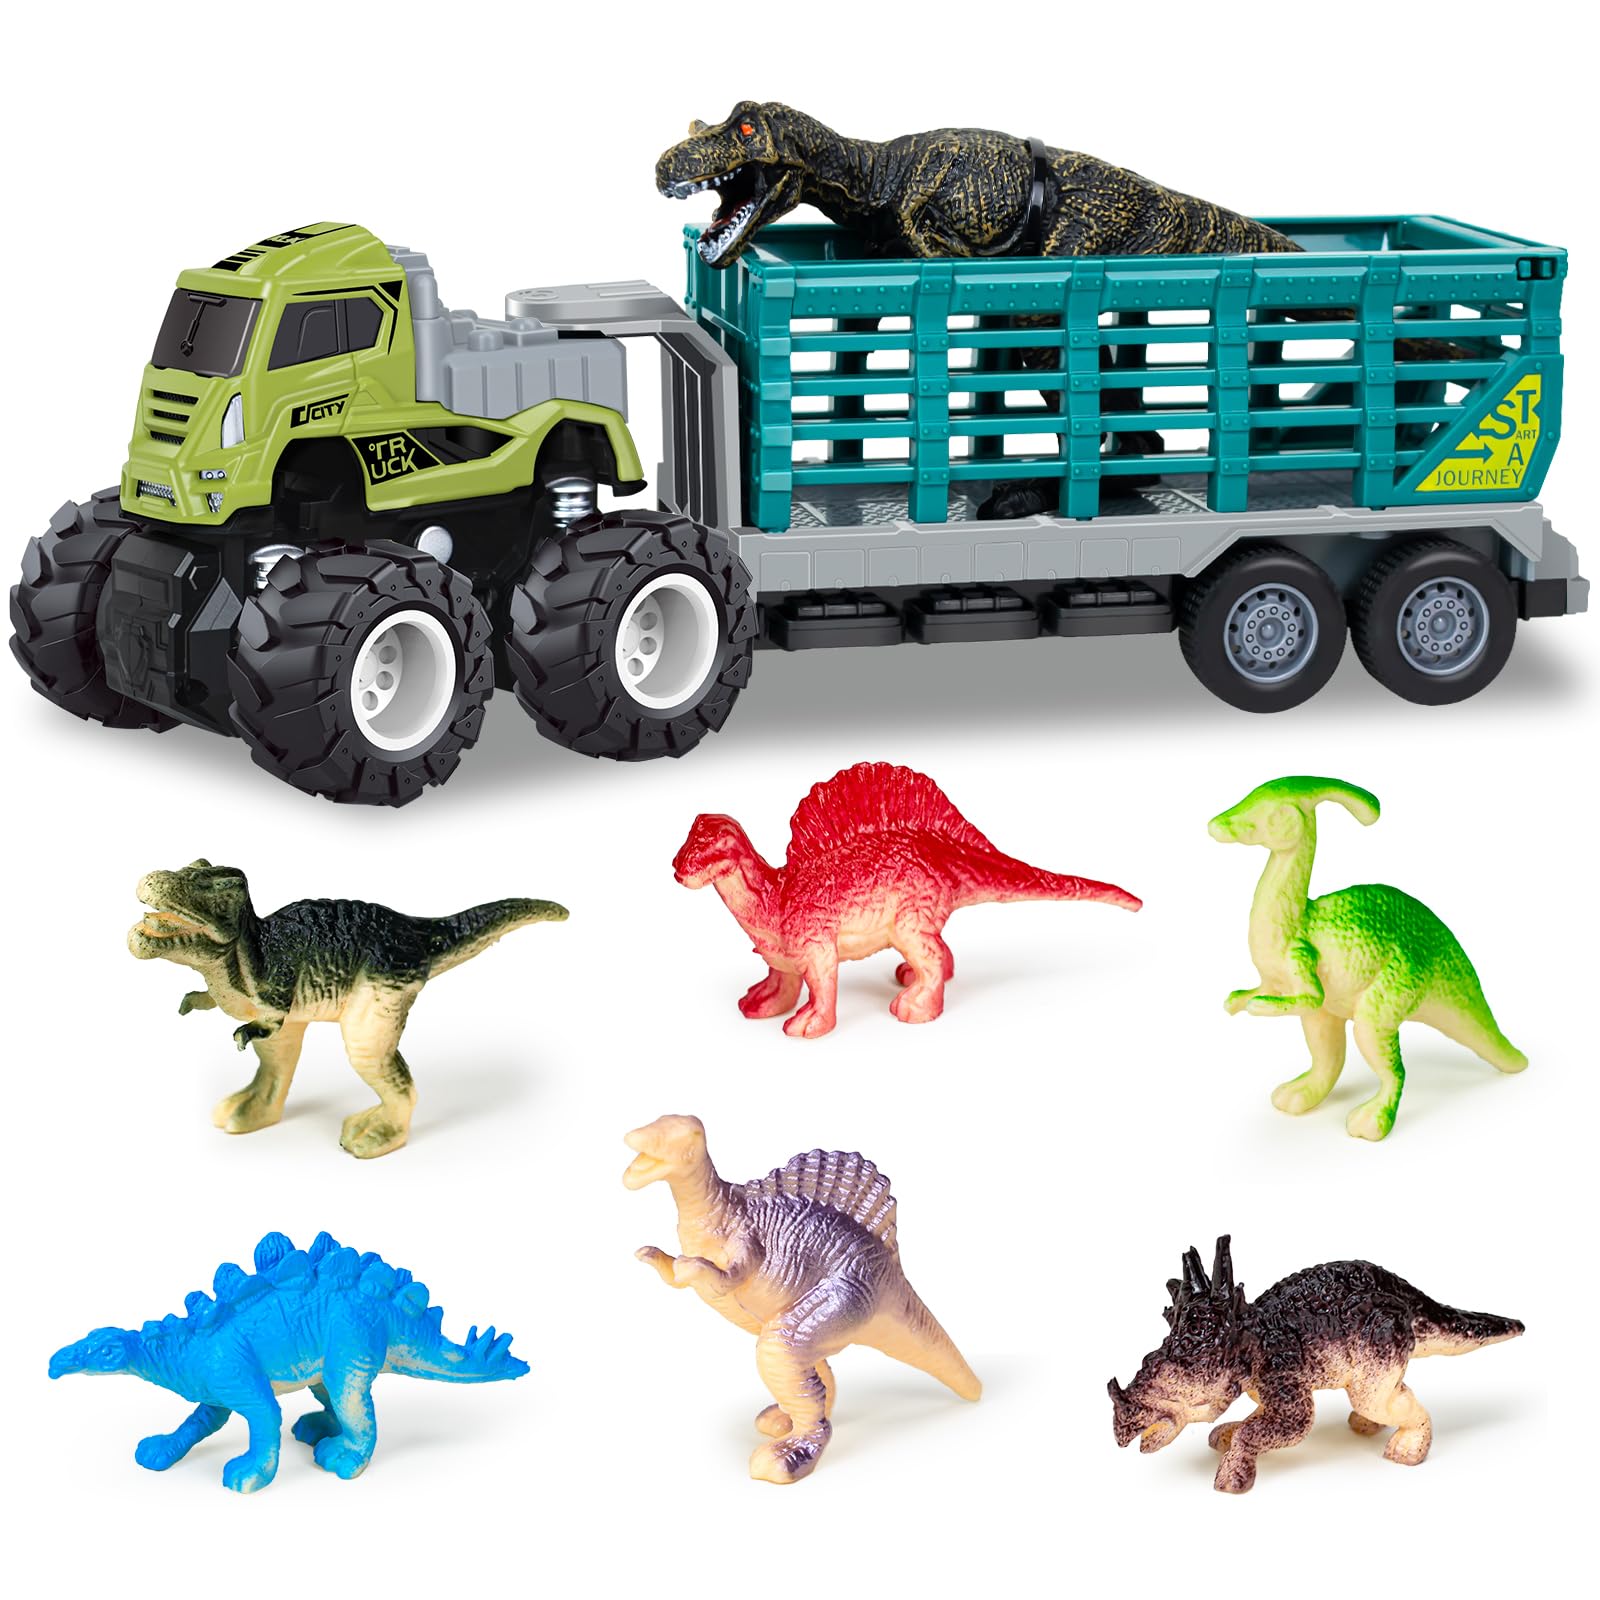 Ynybusi Dinosaur Truck